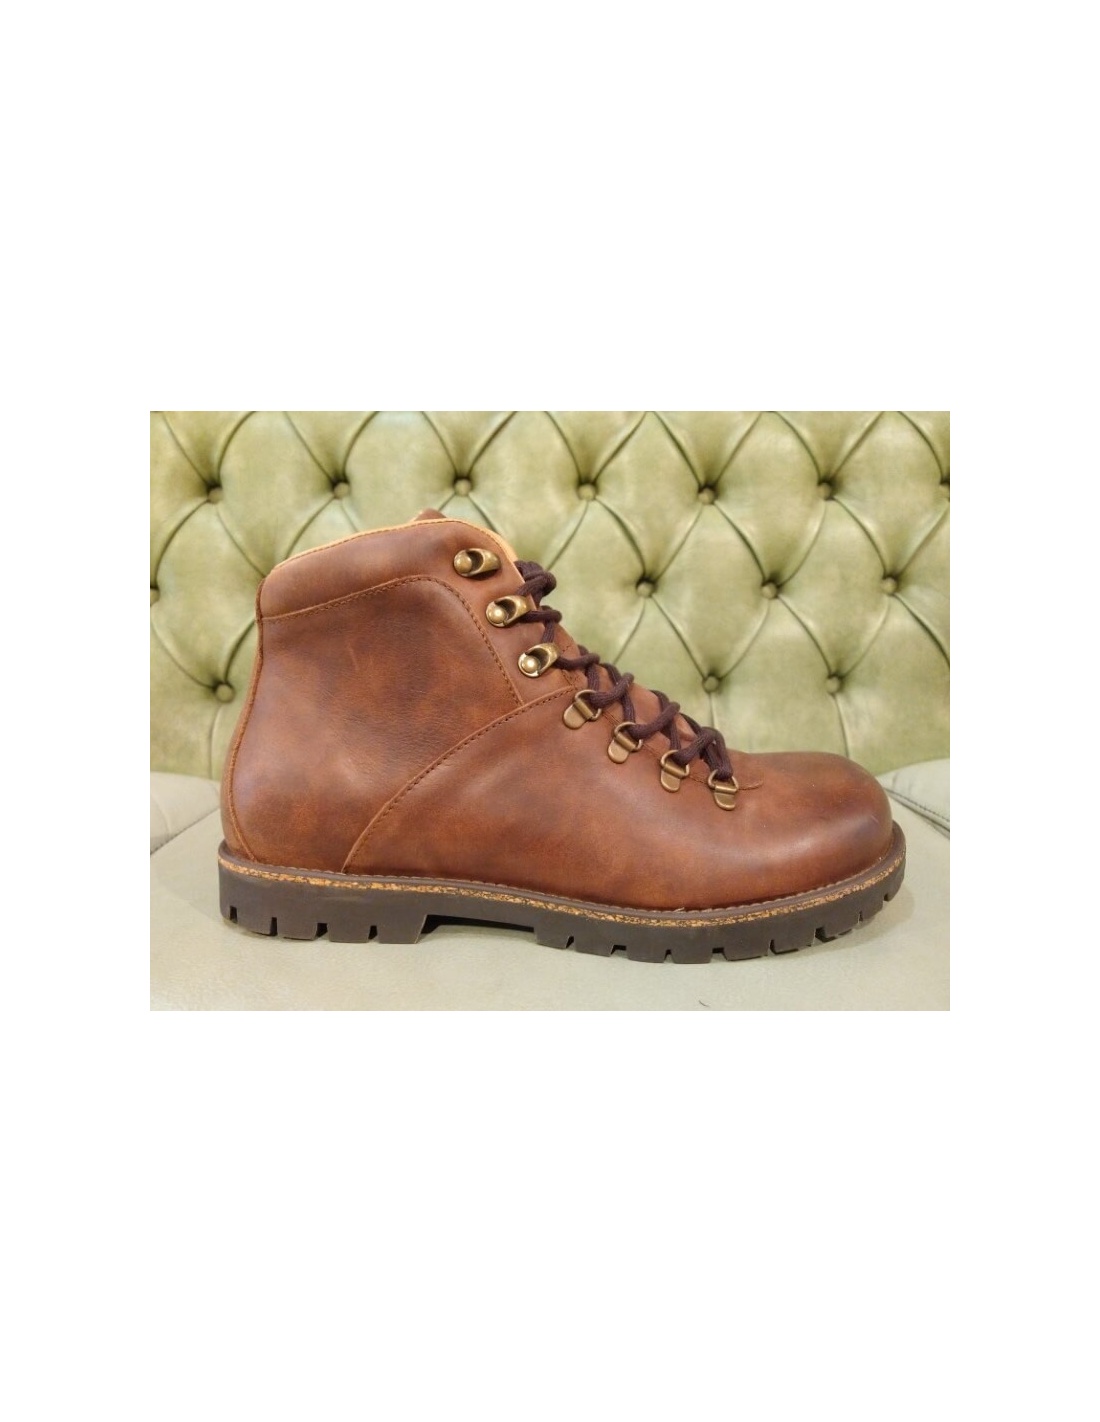 Birkenstock Boots for Men | Jackson | Online